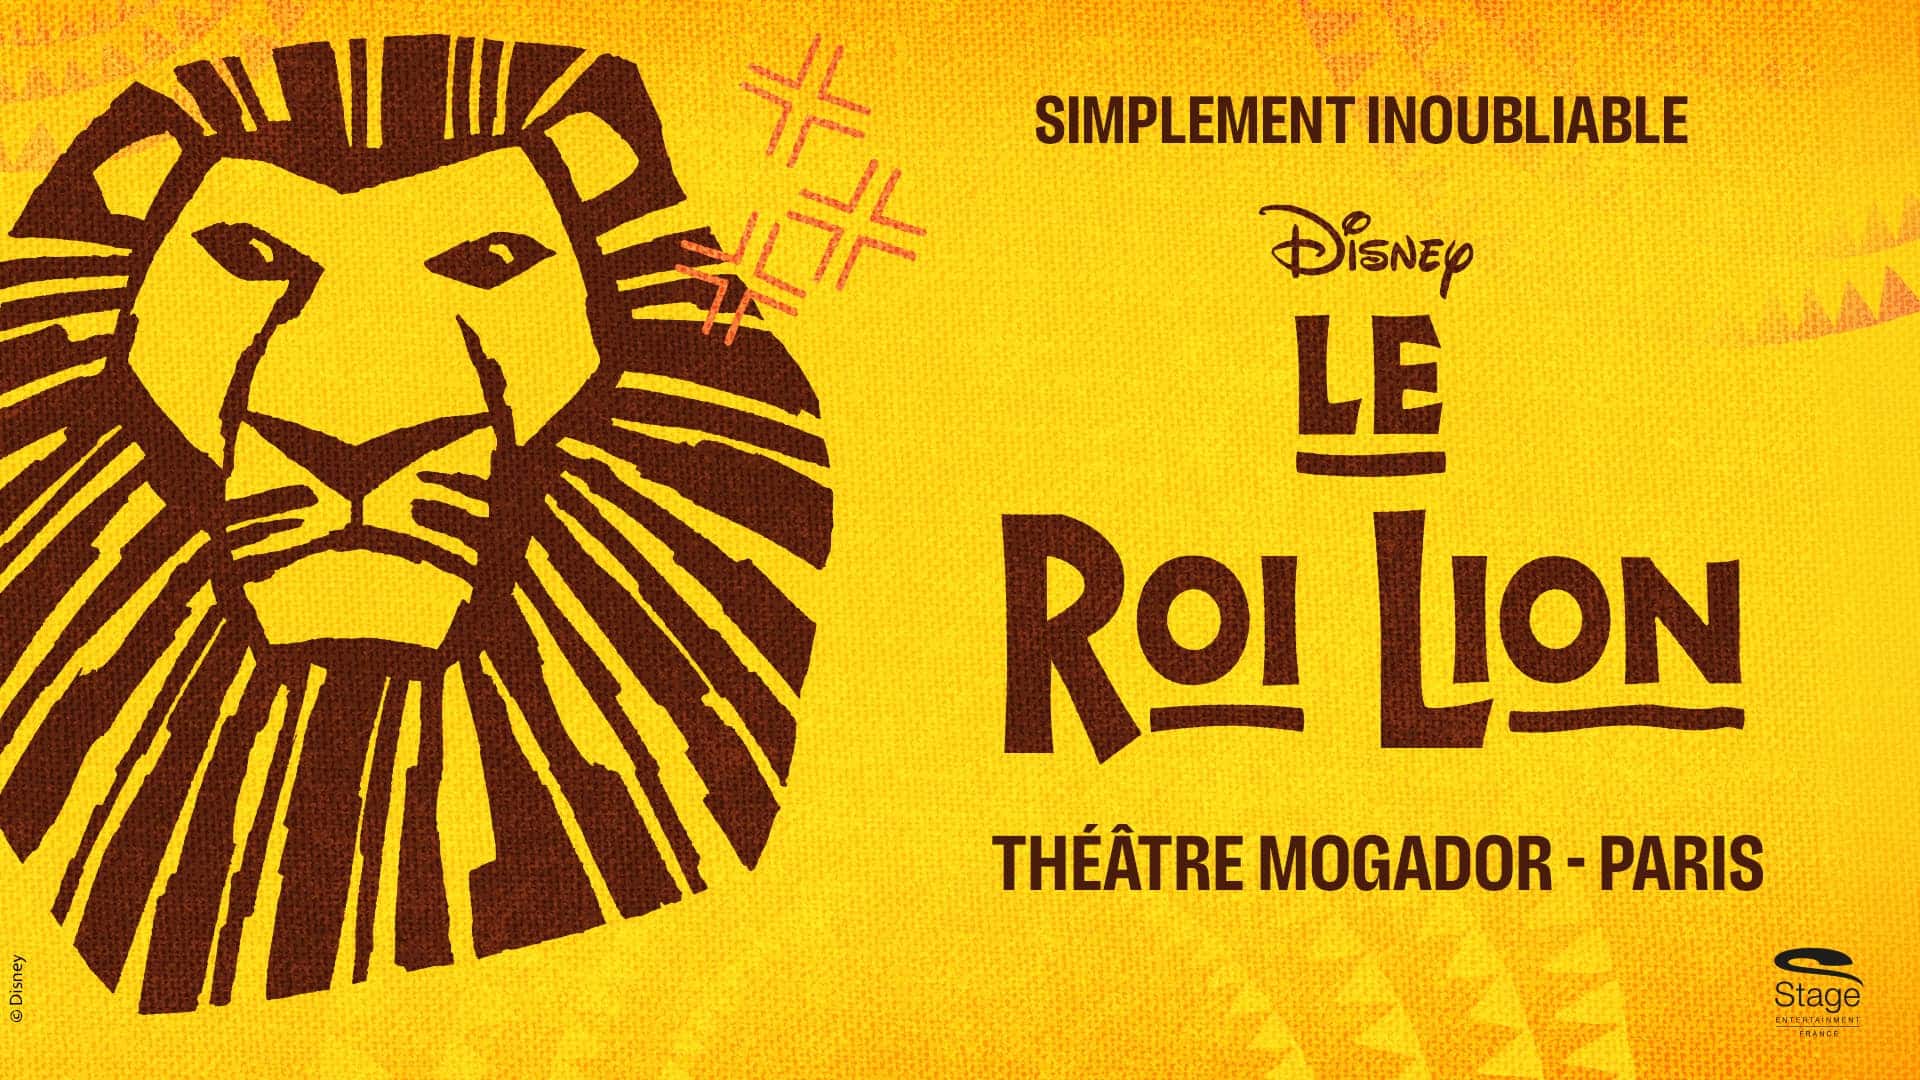 Le roi lion theatre